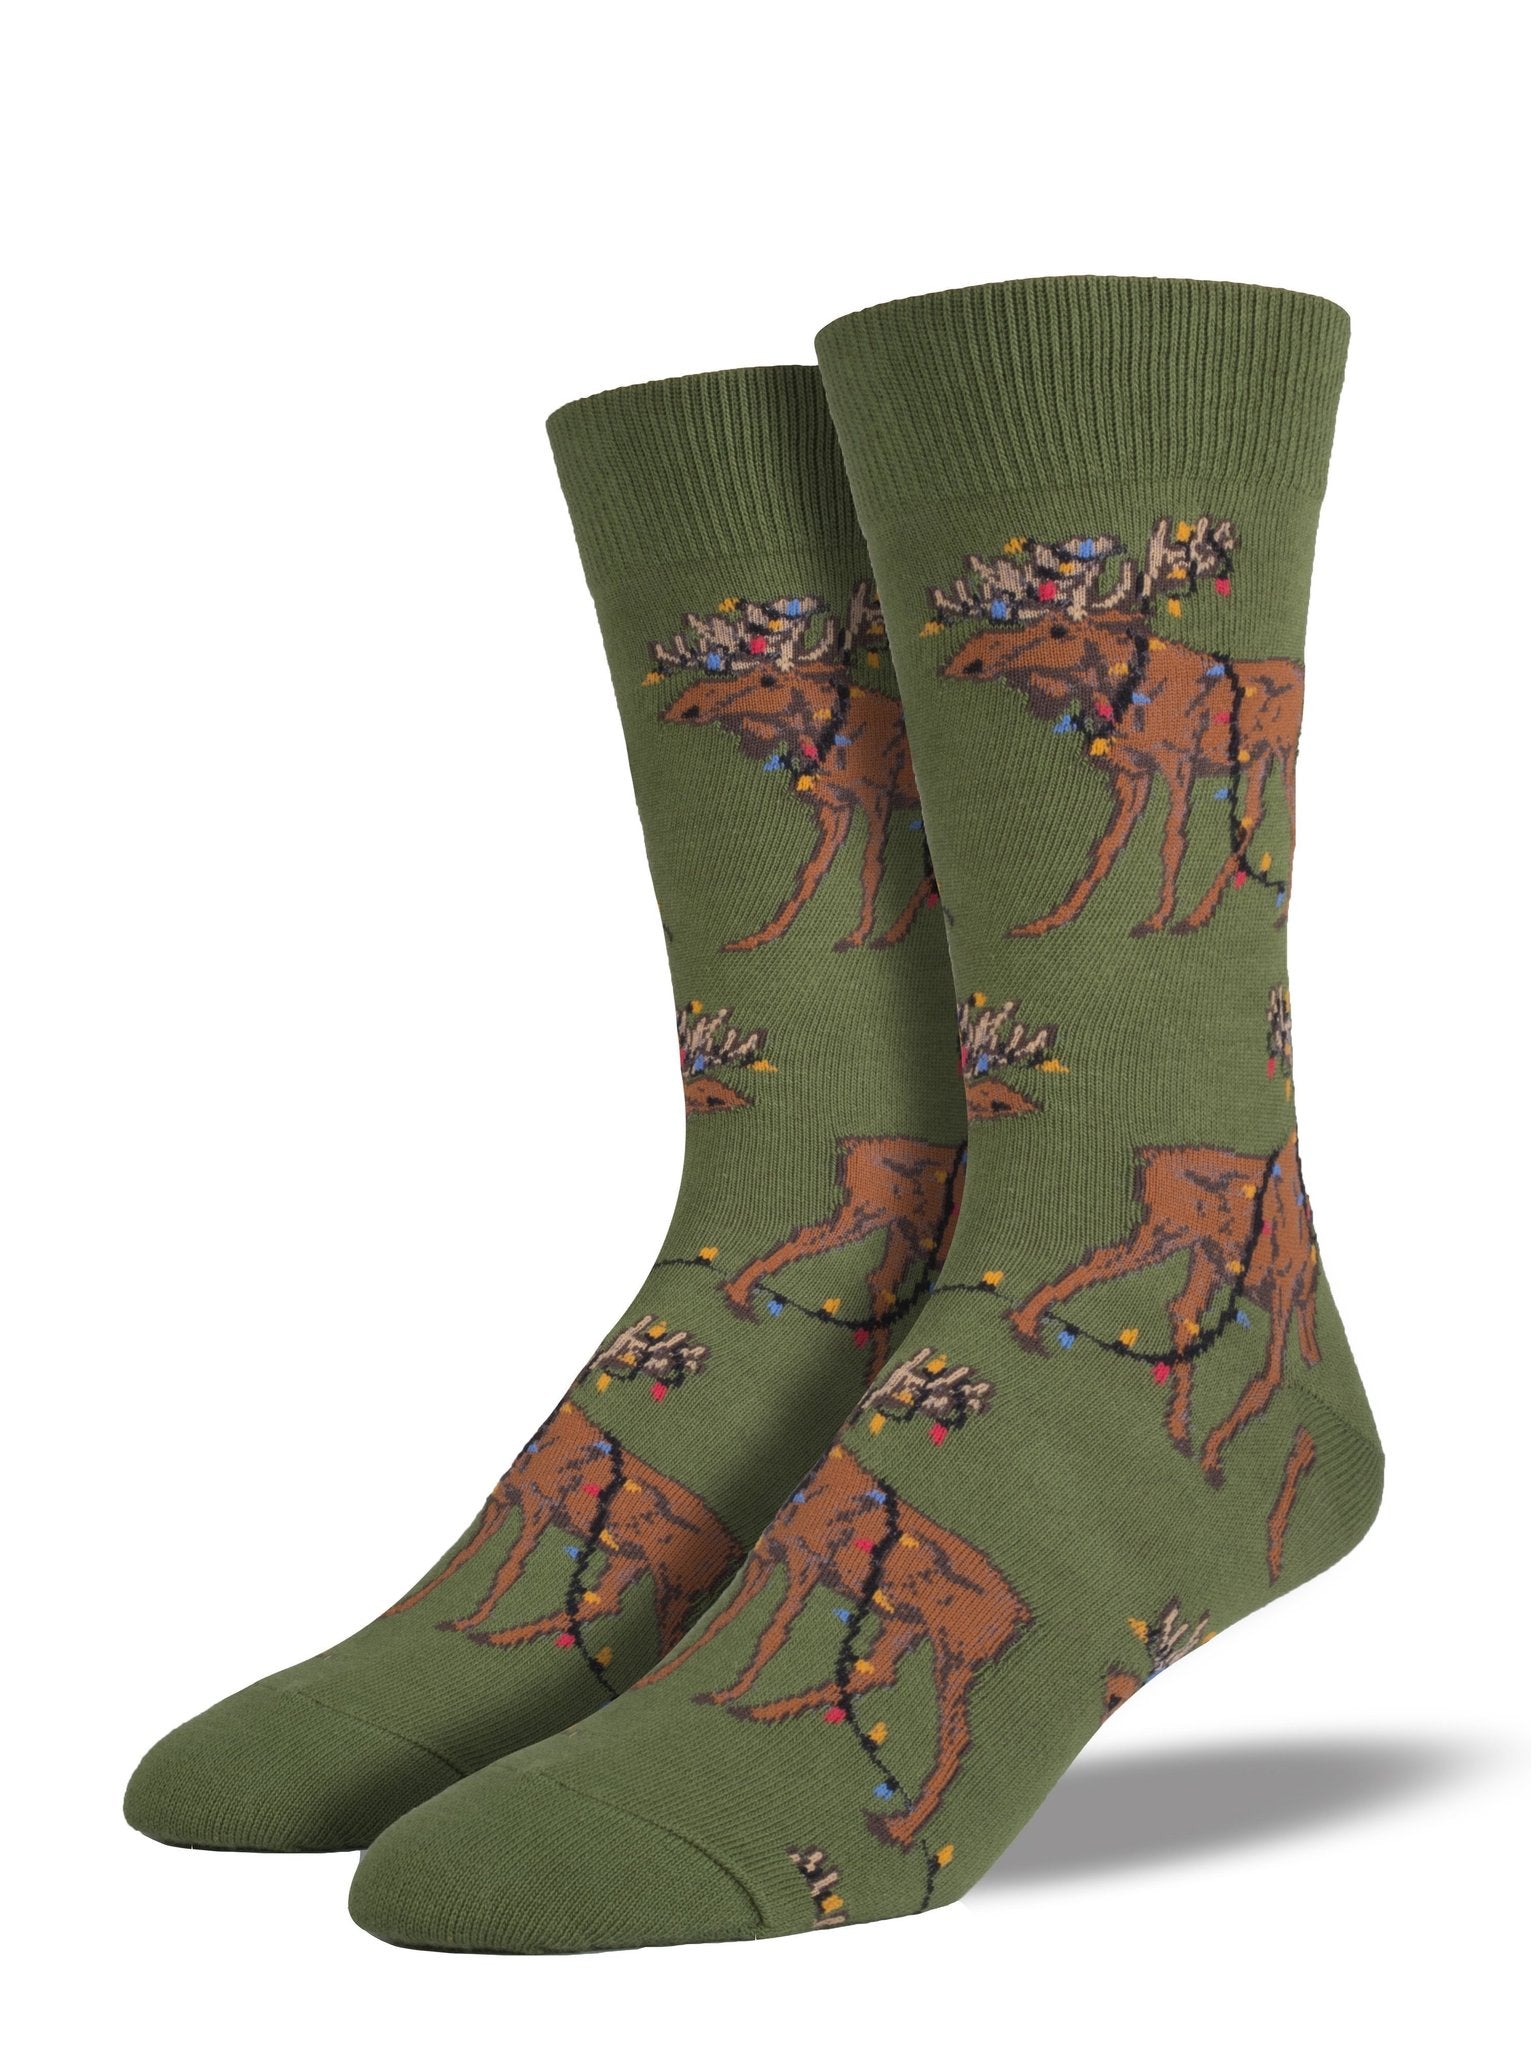 Xmas Lights Moose | Men | Parrot Green - Socks - Socksmith